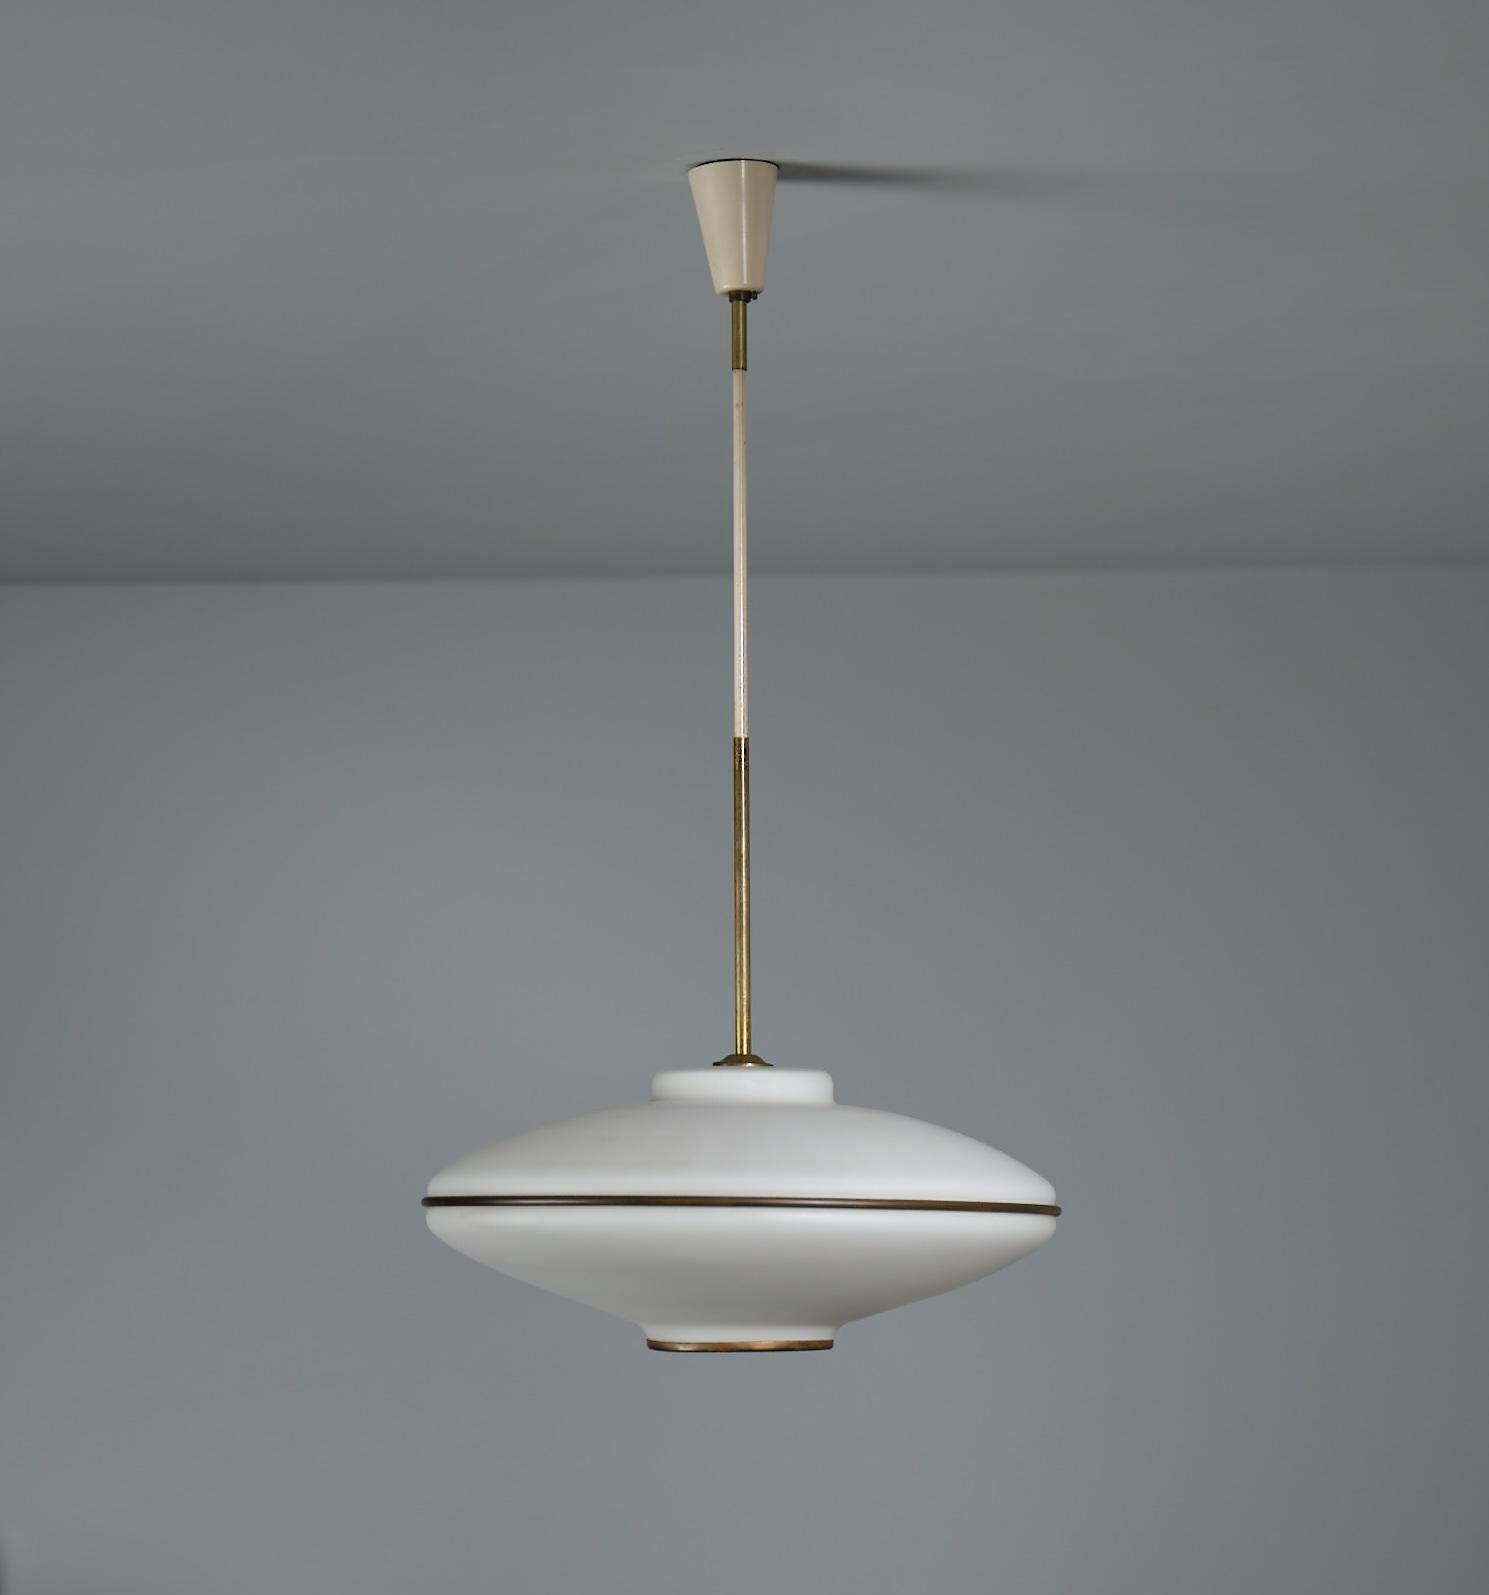 Italian Flying Saucer Pendant Lamp - Vintage 1950s Modernist Ceiling Light For Sale 1